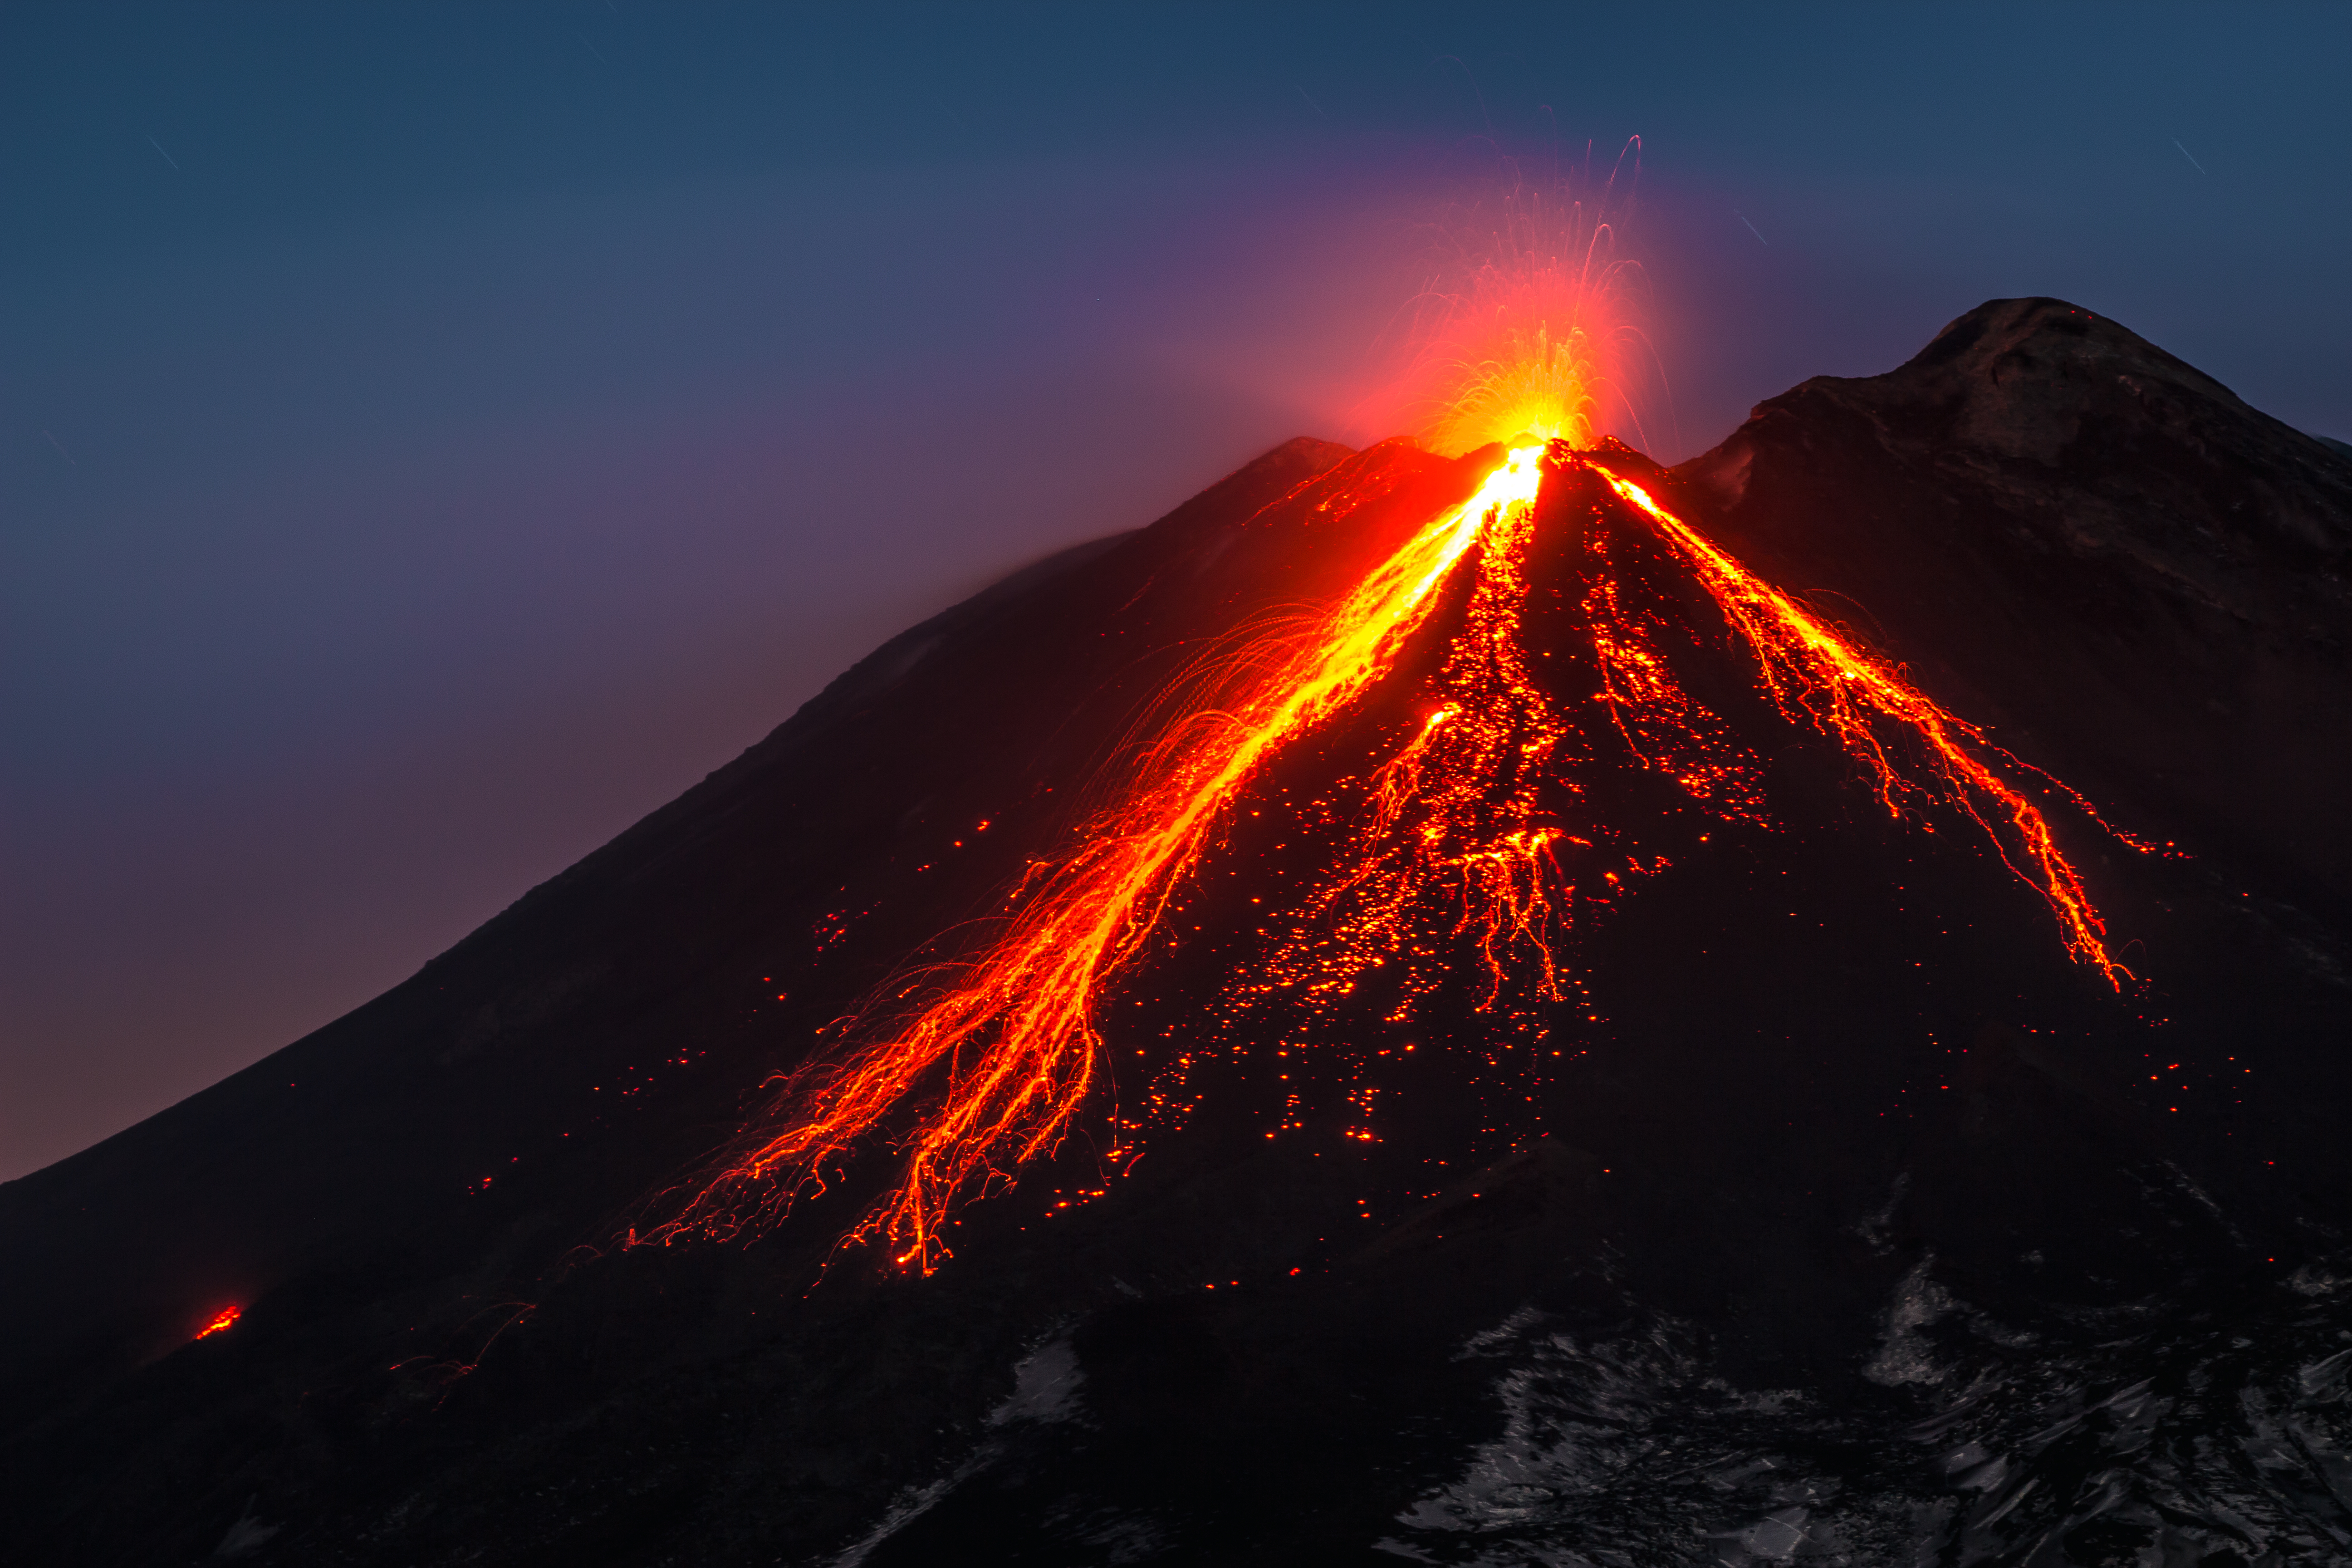 Zichtbare lavastromen tijdens uitbarsting van de Etna